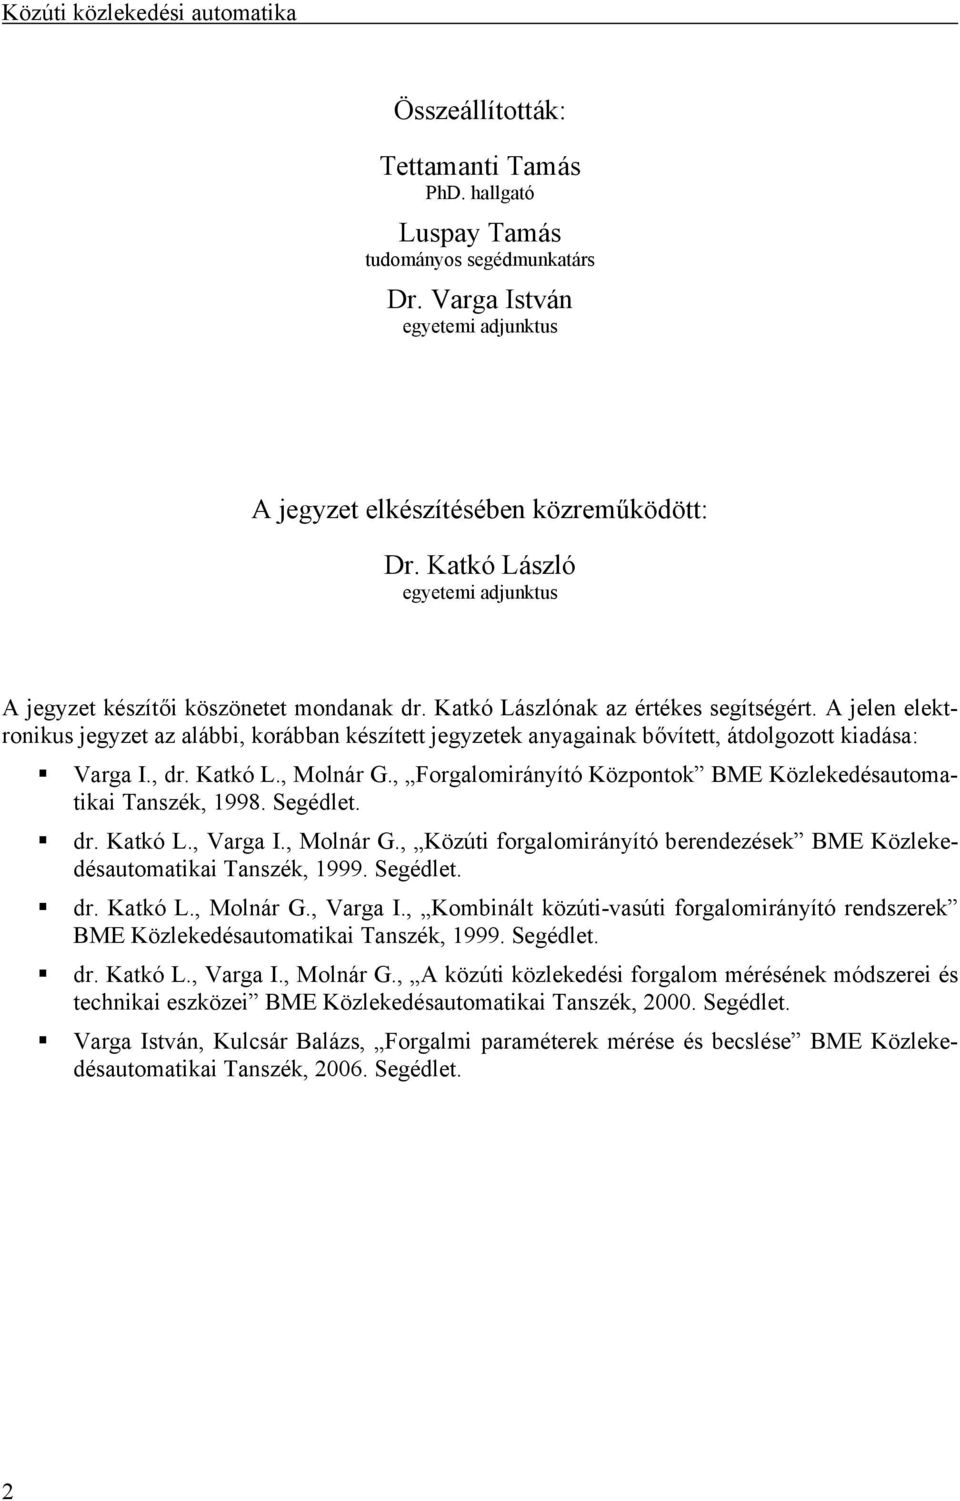 A jelen elektronikus jegyzet az alábbi, korábban készített jegyzetek anyagainak bővített, átdolgozott kiadása: Varga I., dr. Katkó L., Molnár G.